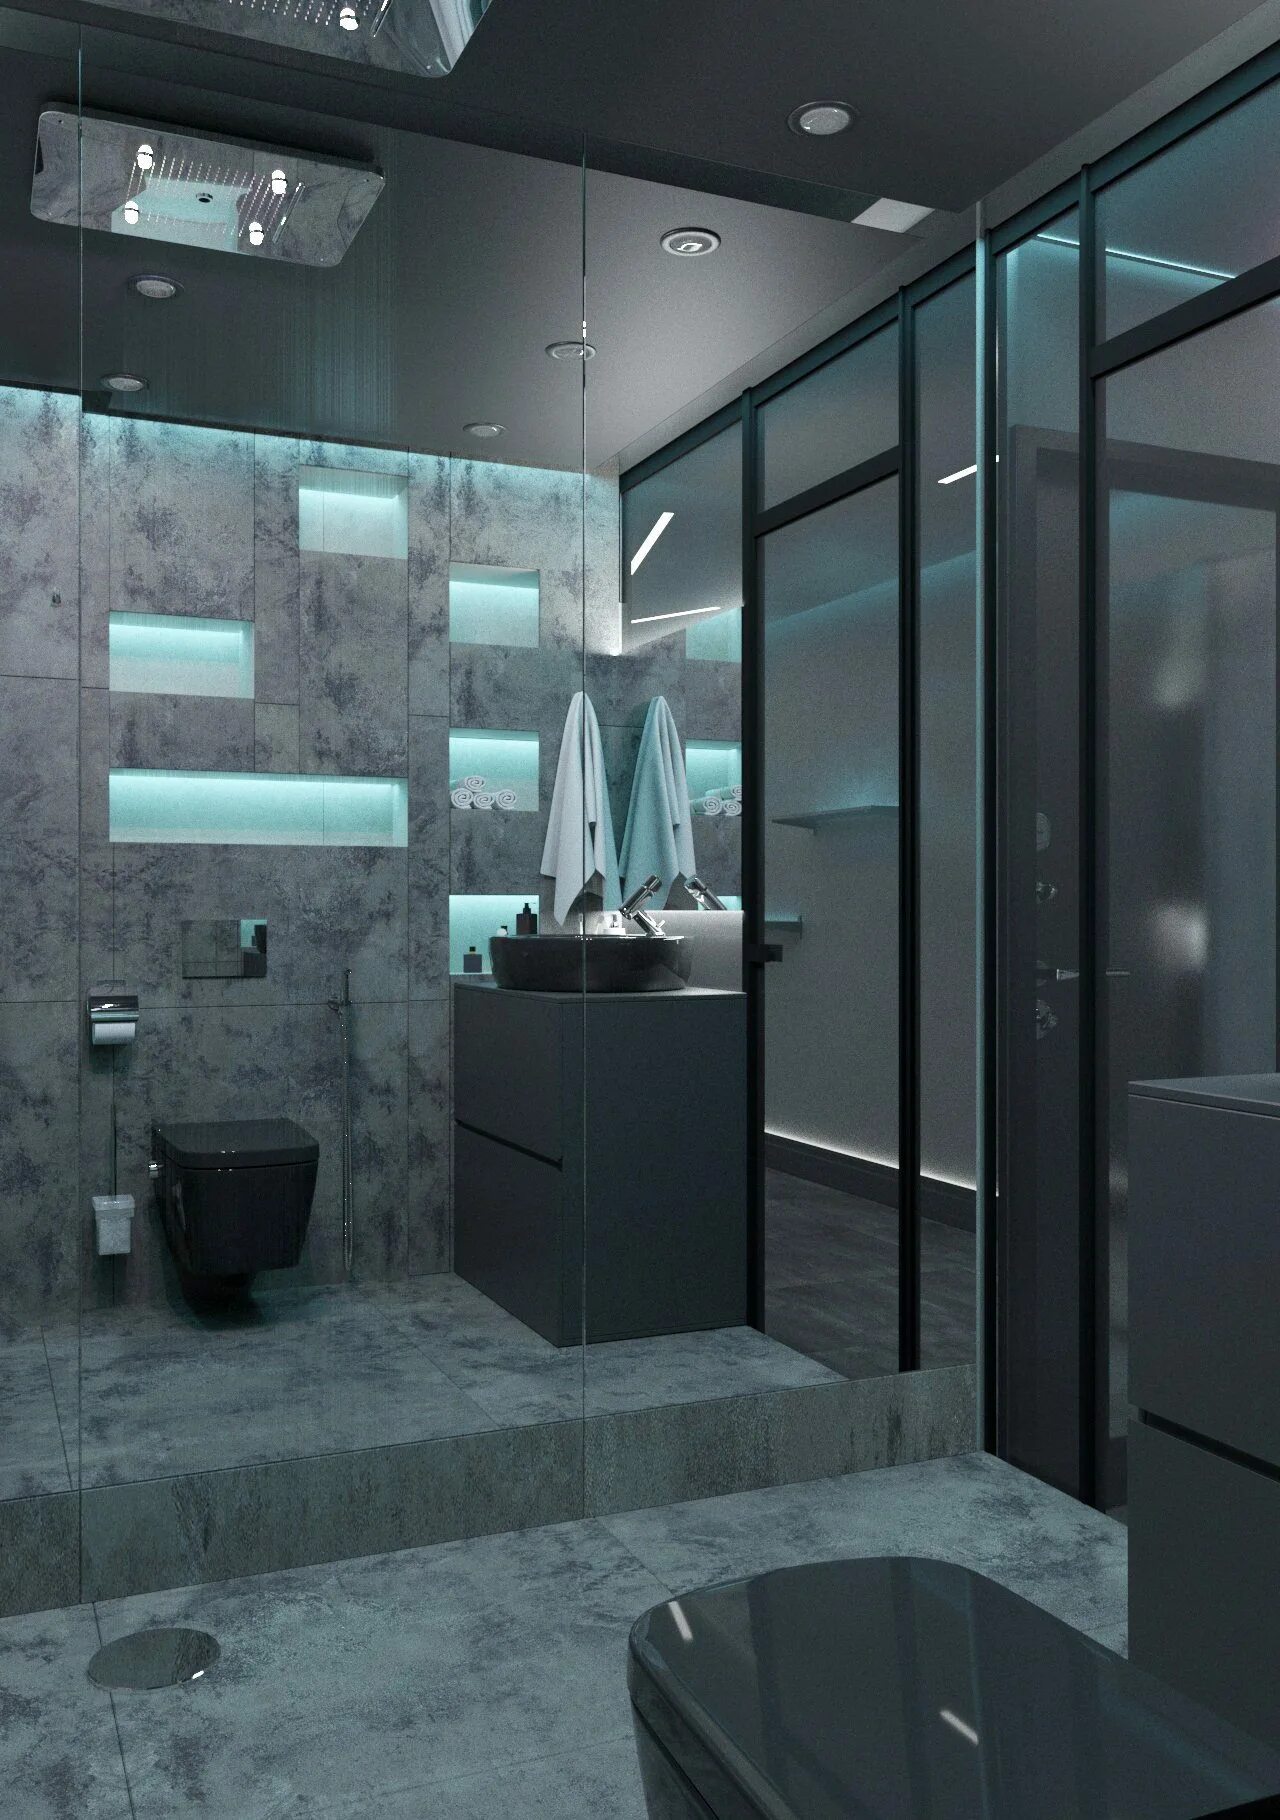 High tech 2. Комната в стиле Хай тек. Современная ванная комната. Ванные комнаты в стиле хайтек. Ванная в стиле Hi-Tech.